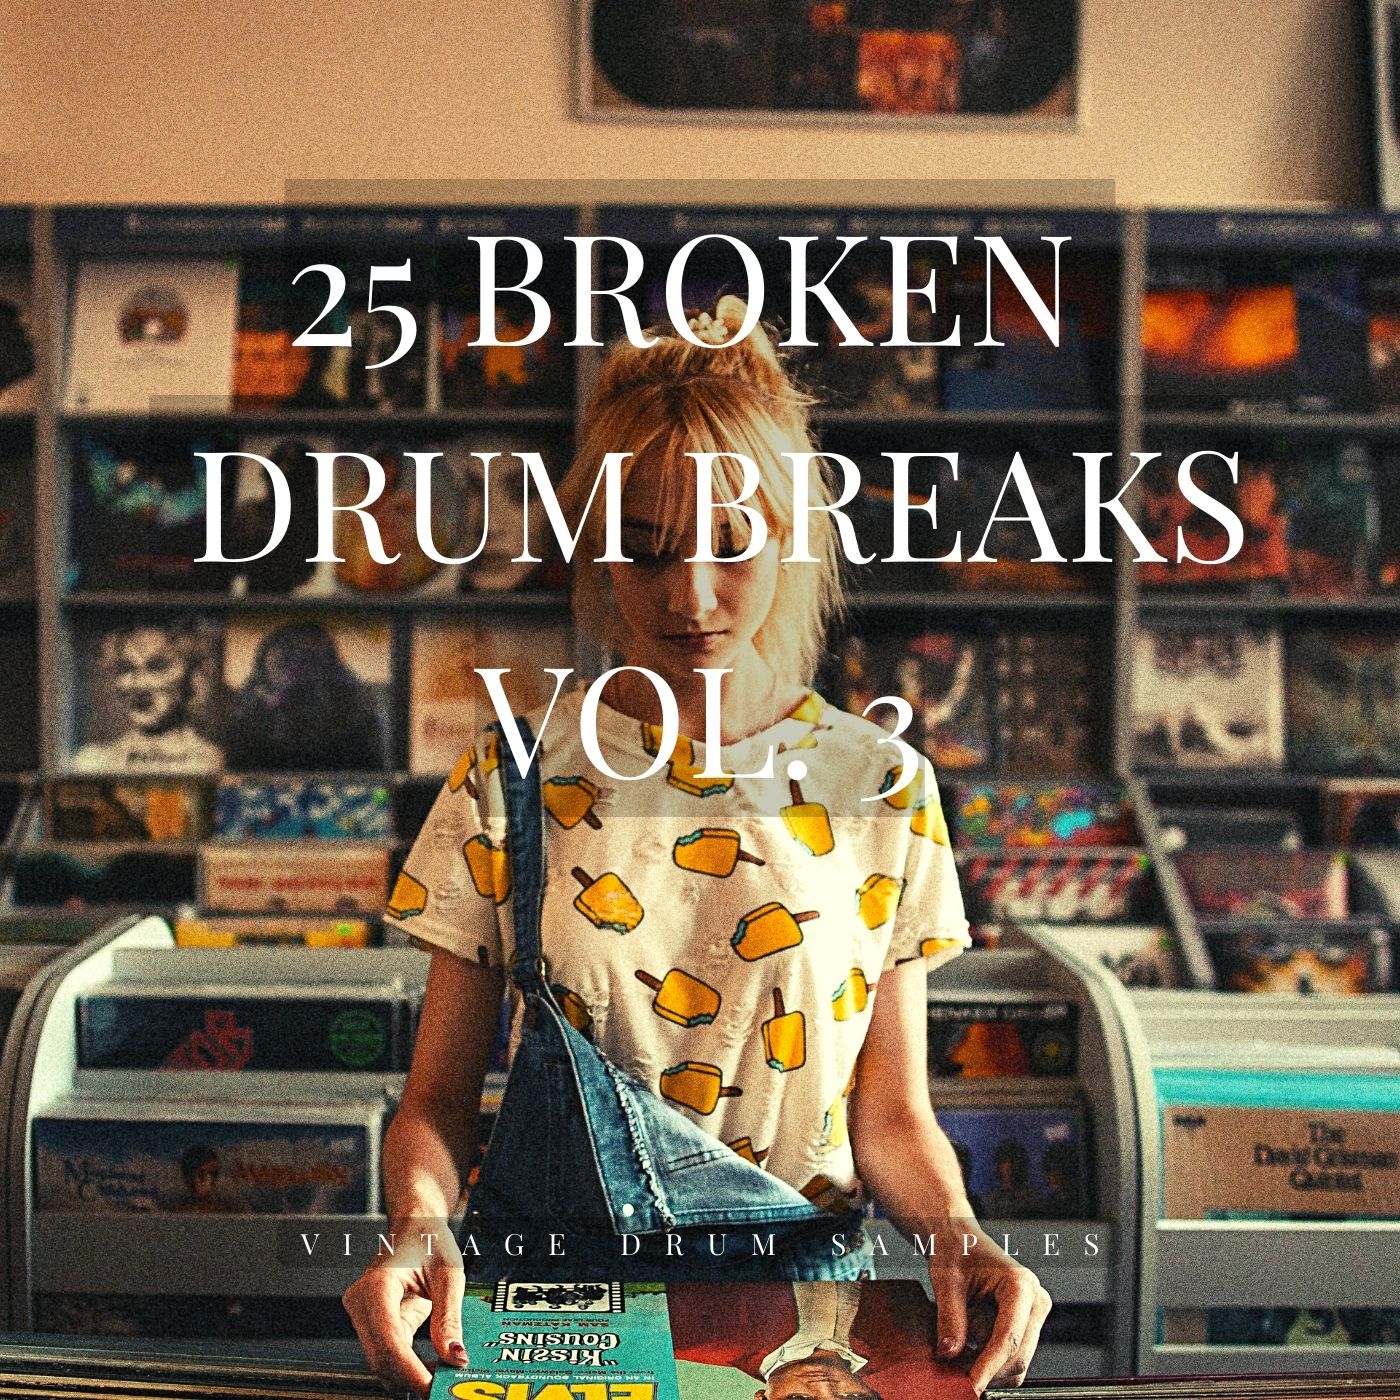 Vintage Drum Samples - Broken Drum Breaks Vol. 3 [Marketplace]